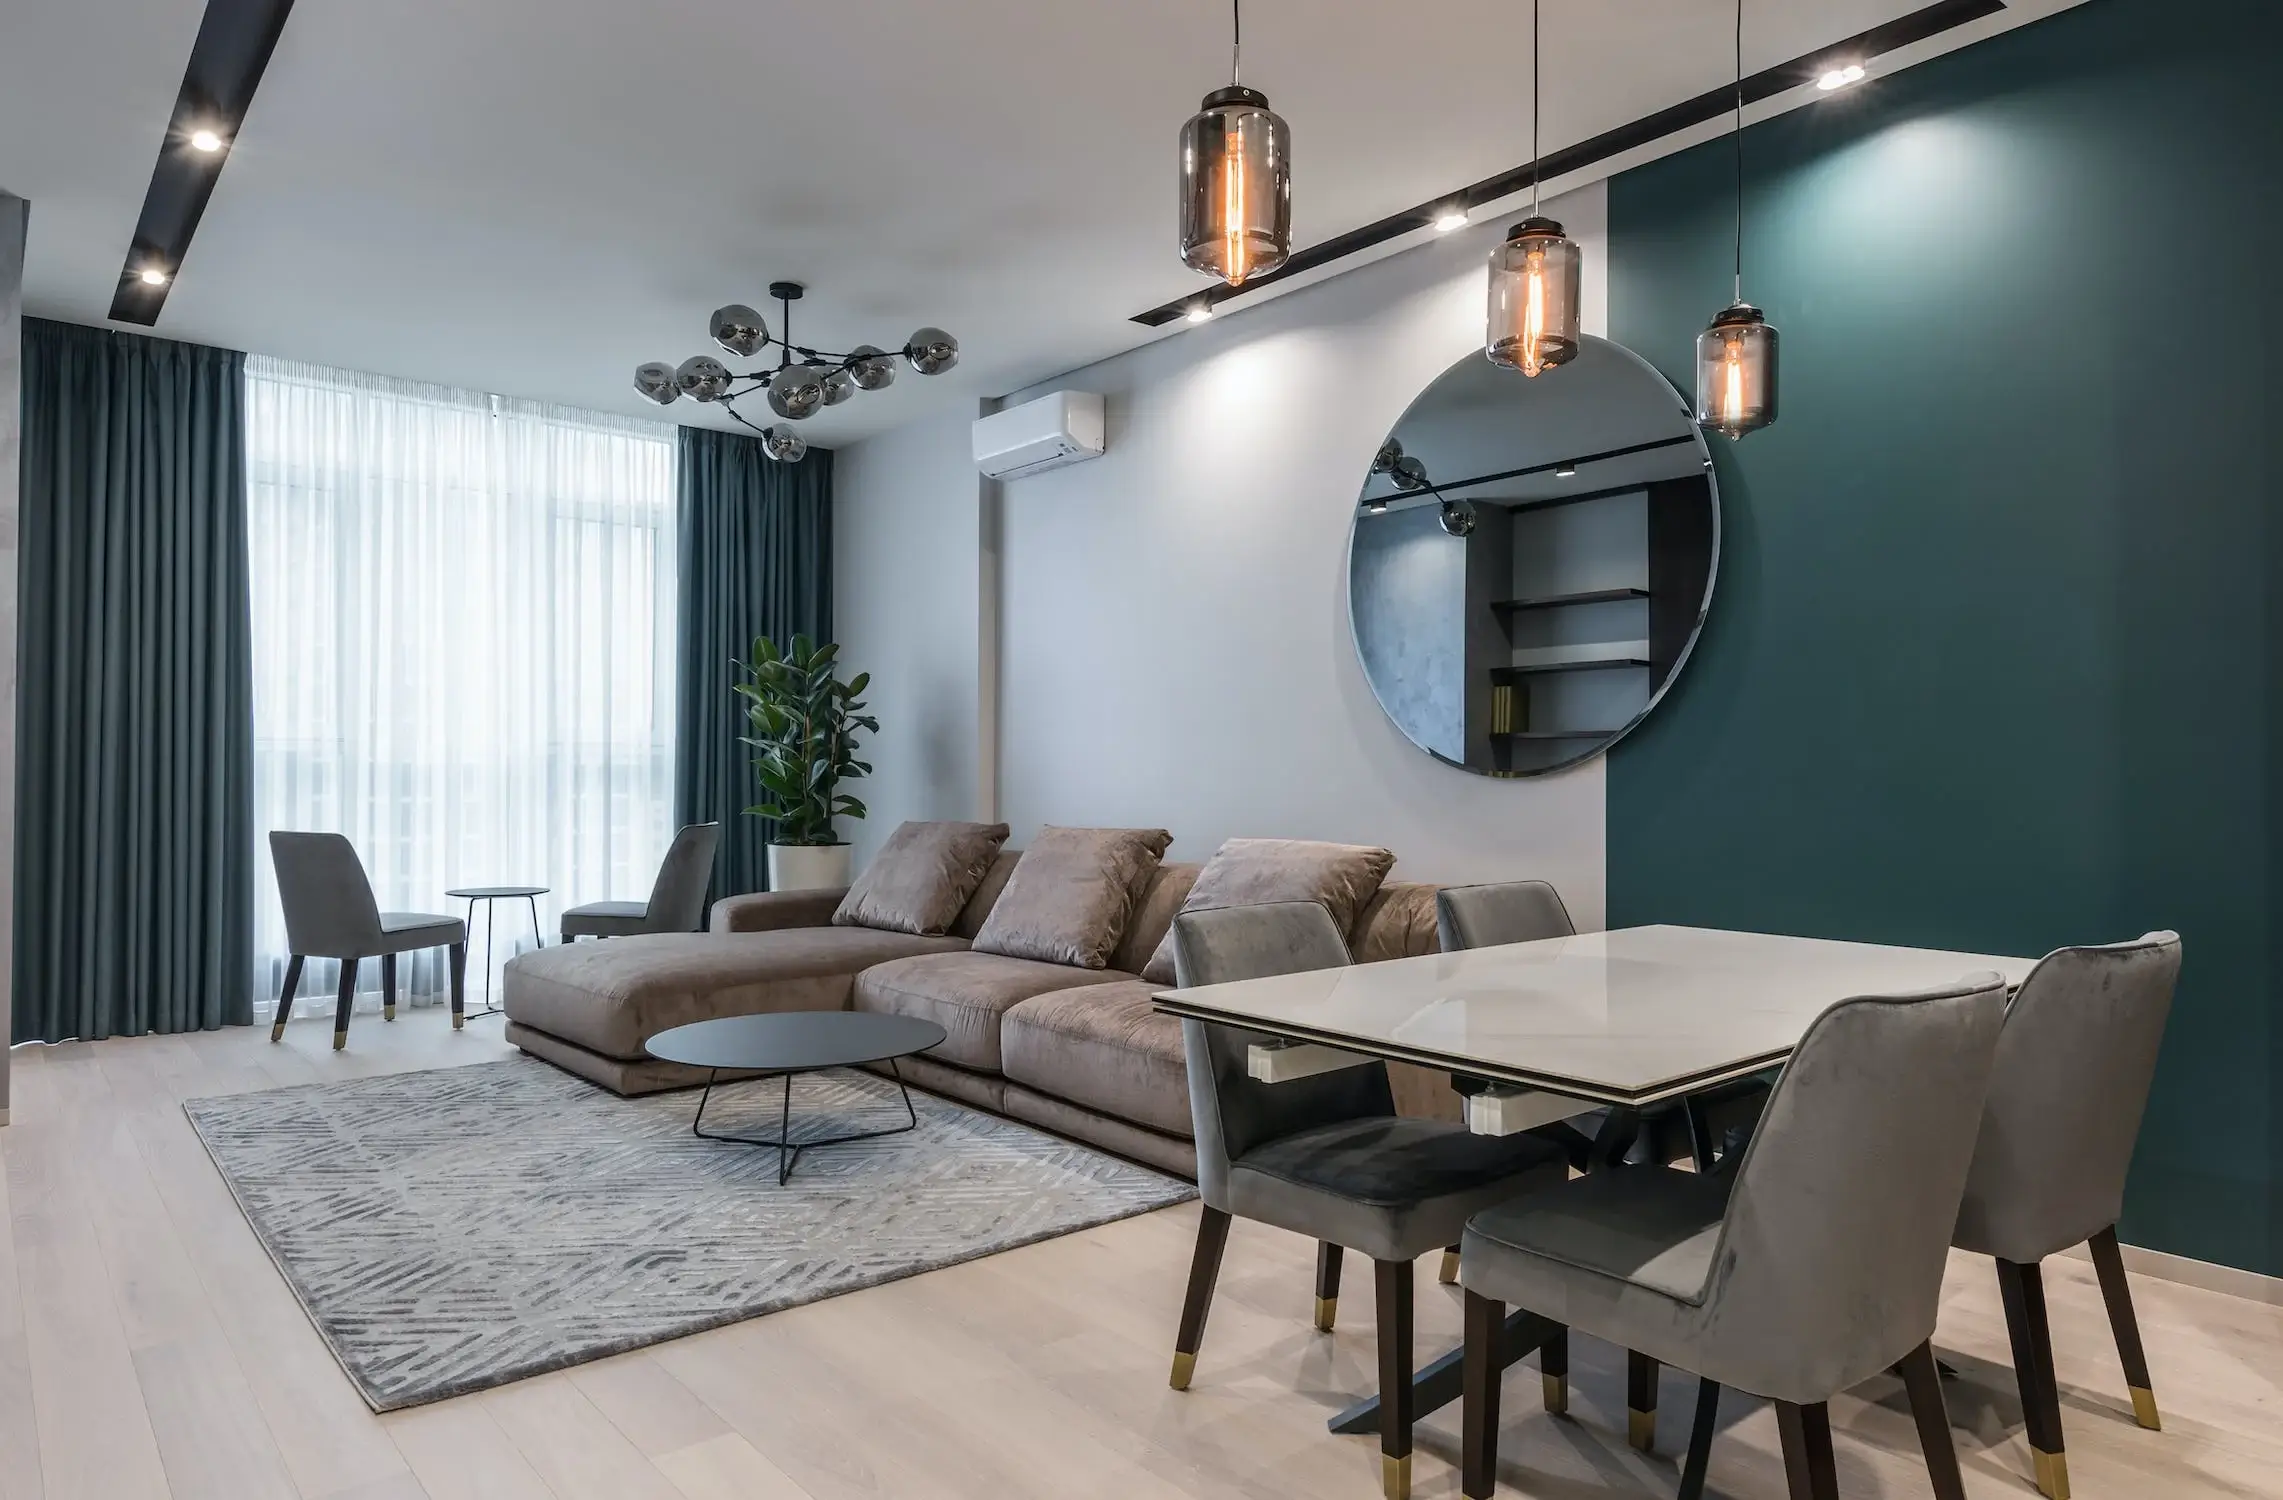 Lehetőségekben gazdag otthonok várnak a legújabb budapesti lakóparkokban